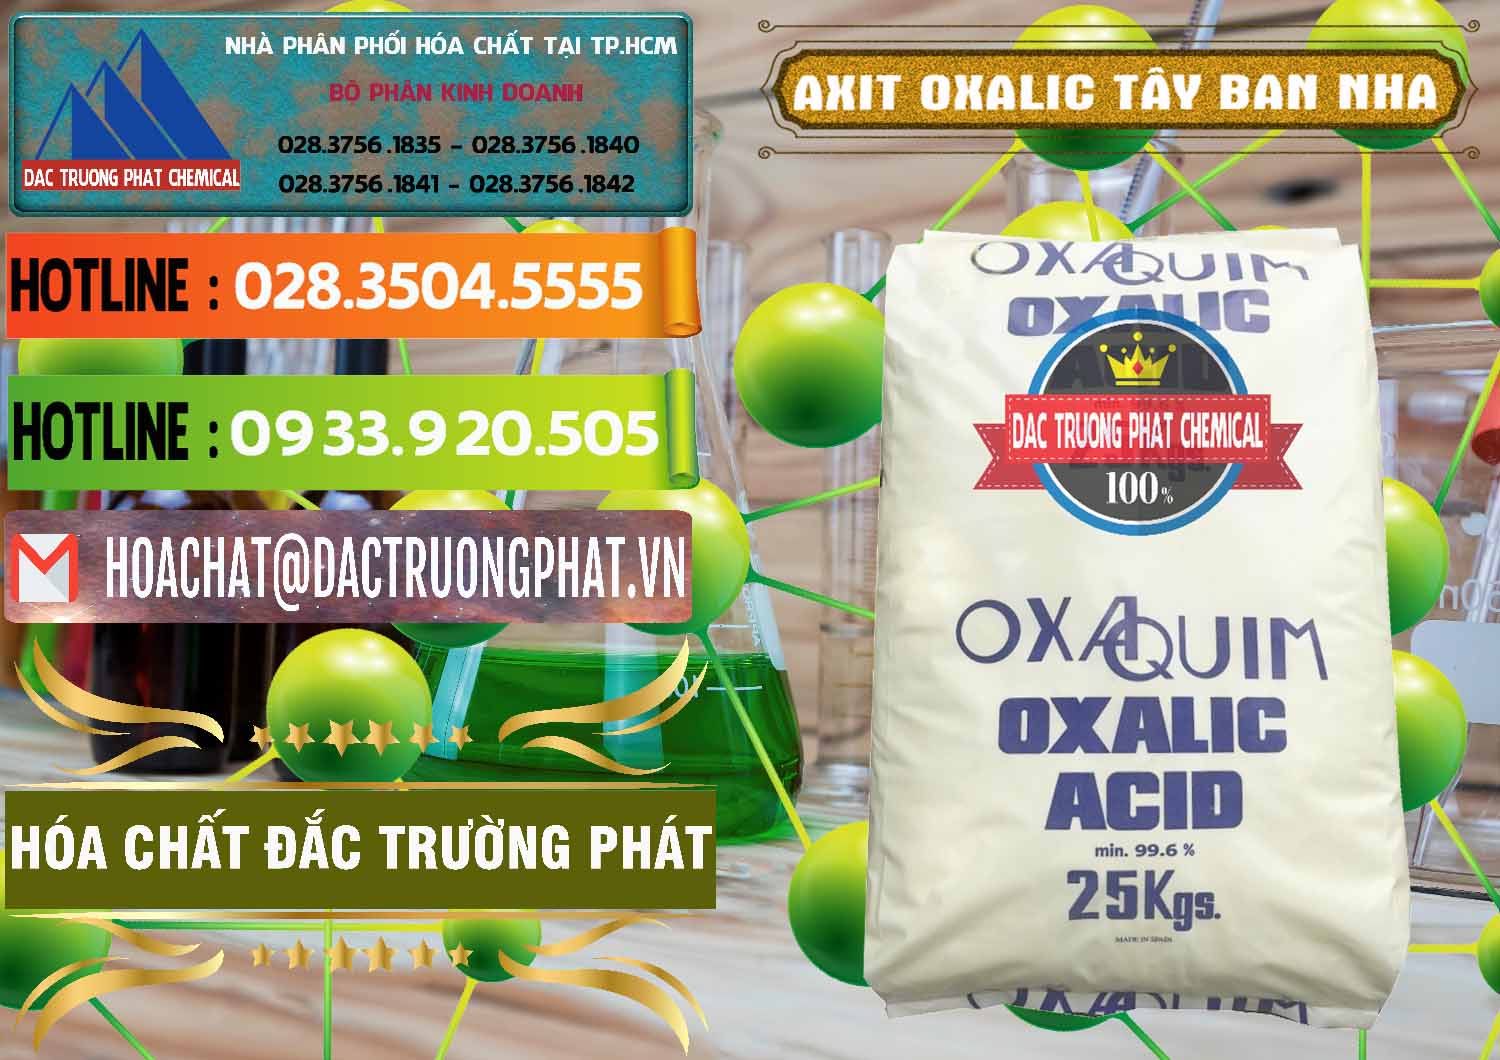 Cty bán ( cung cấp ) Acid Oxalic – Axit Oxalic 99.6% Tây Ban Nha Spain - 0269 - Nơi bán _ phân phối hóa chất tại TP.HCM - cungcaphoachat.com.vn